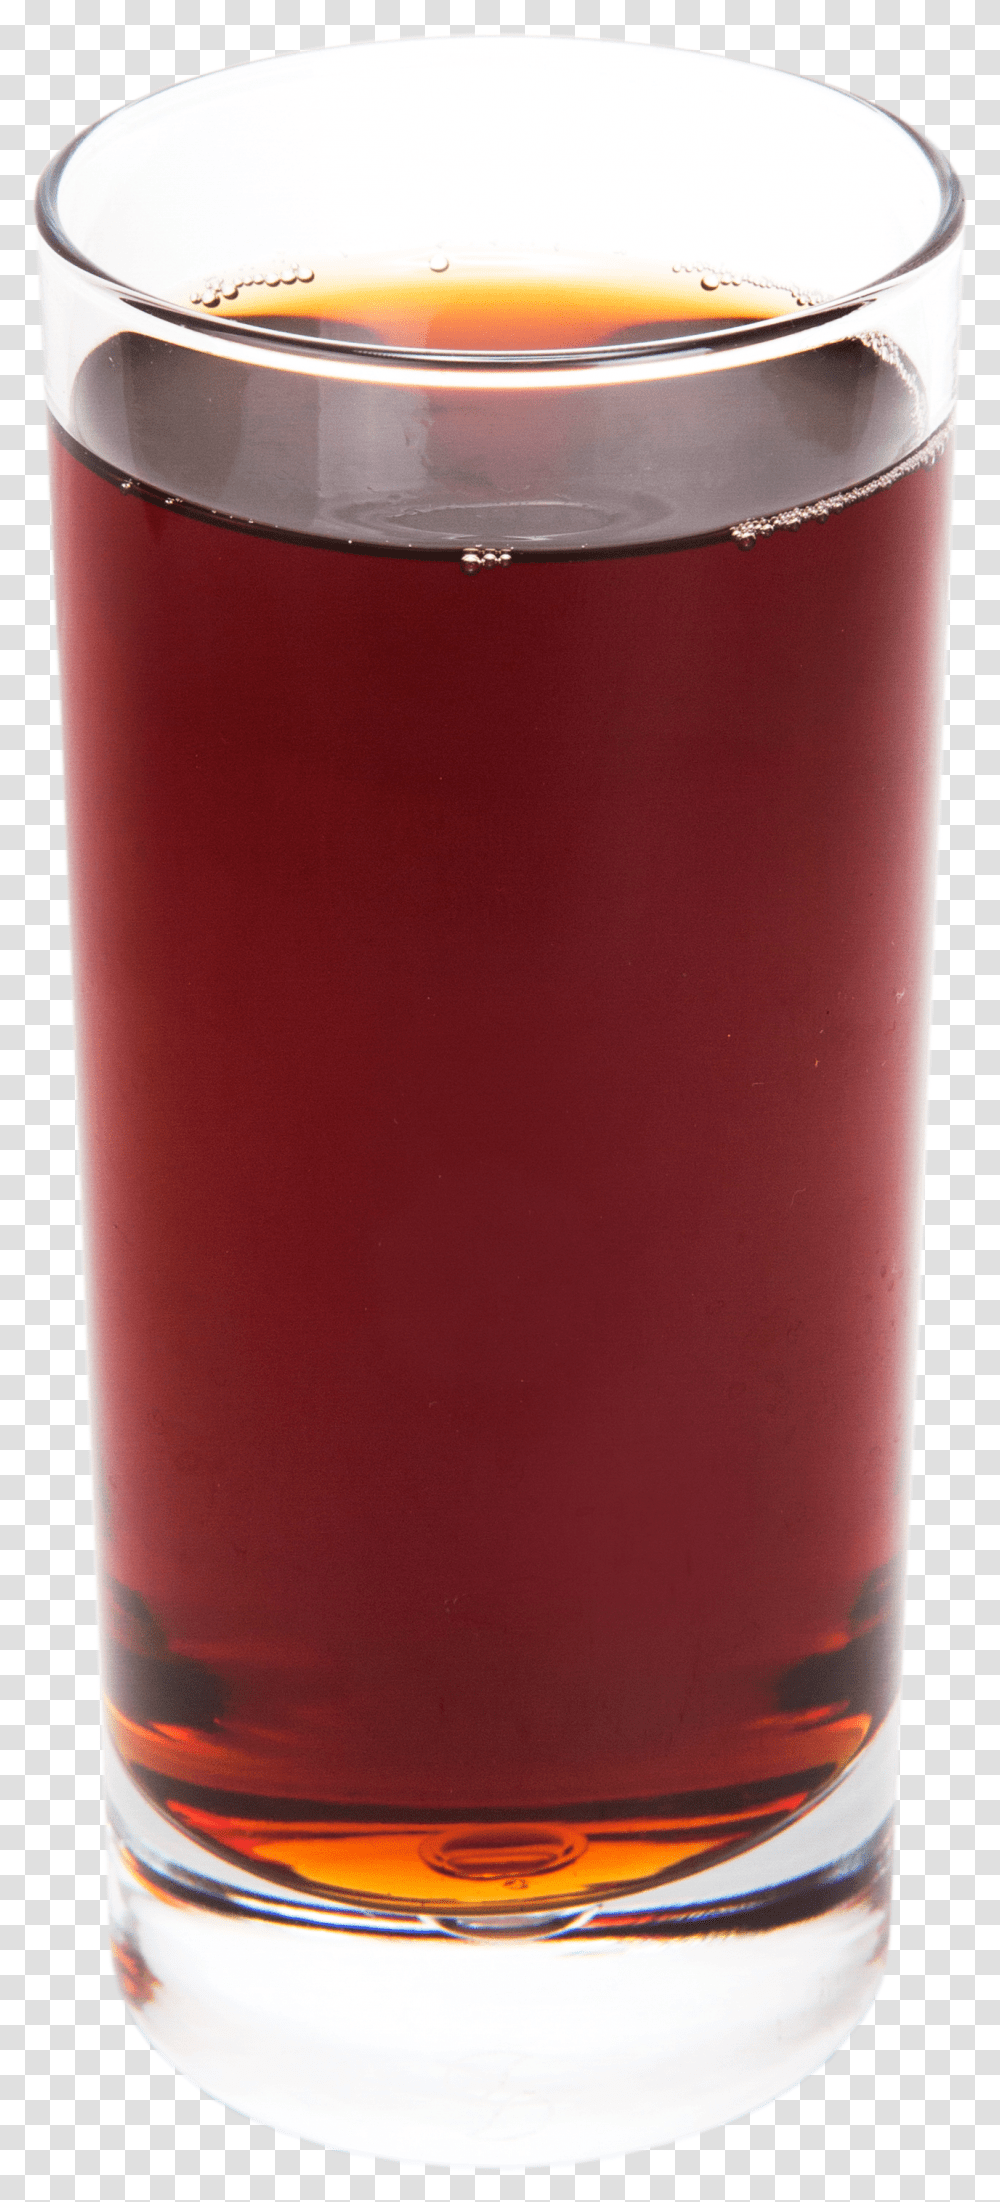 Pomegranate Juice Pint Glass, Beer, Alcohol, Beverage, Bottle Transparent Png